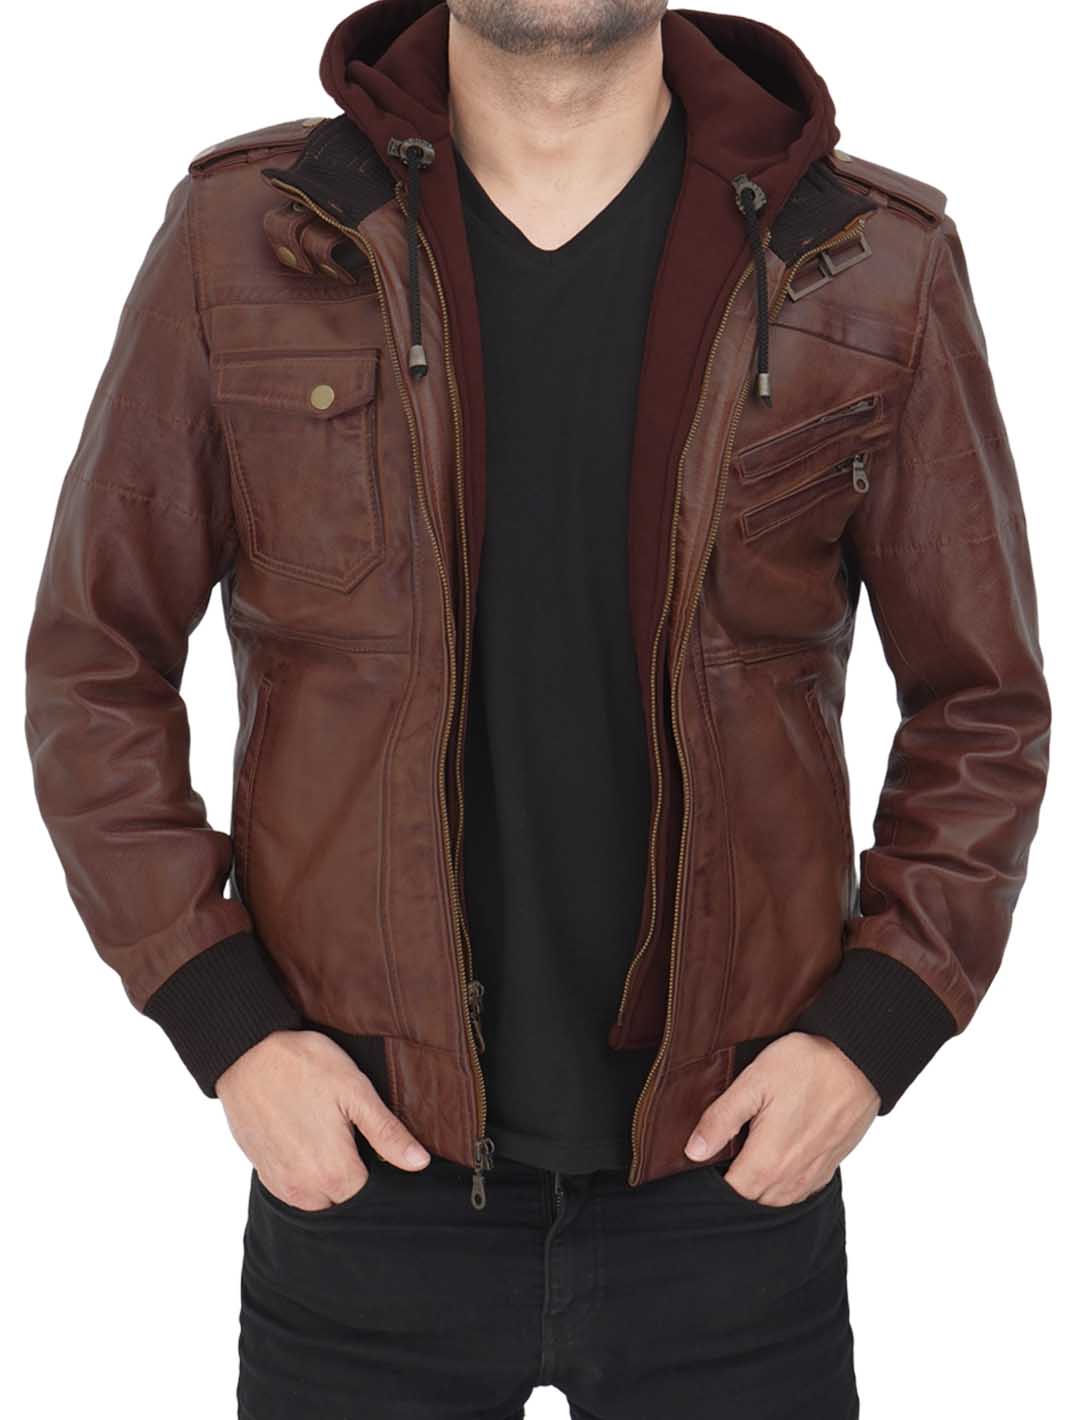 Leather Bomber Jacket Mens | Shop Stylish Jackets | Decrum